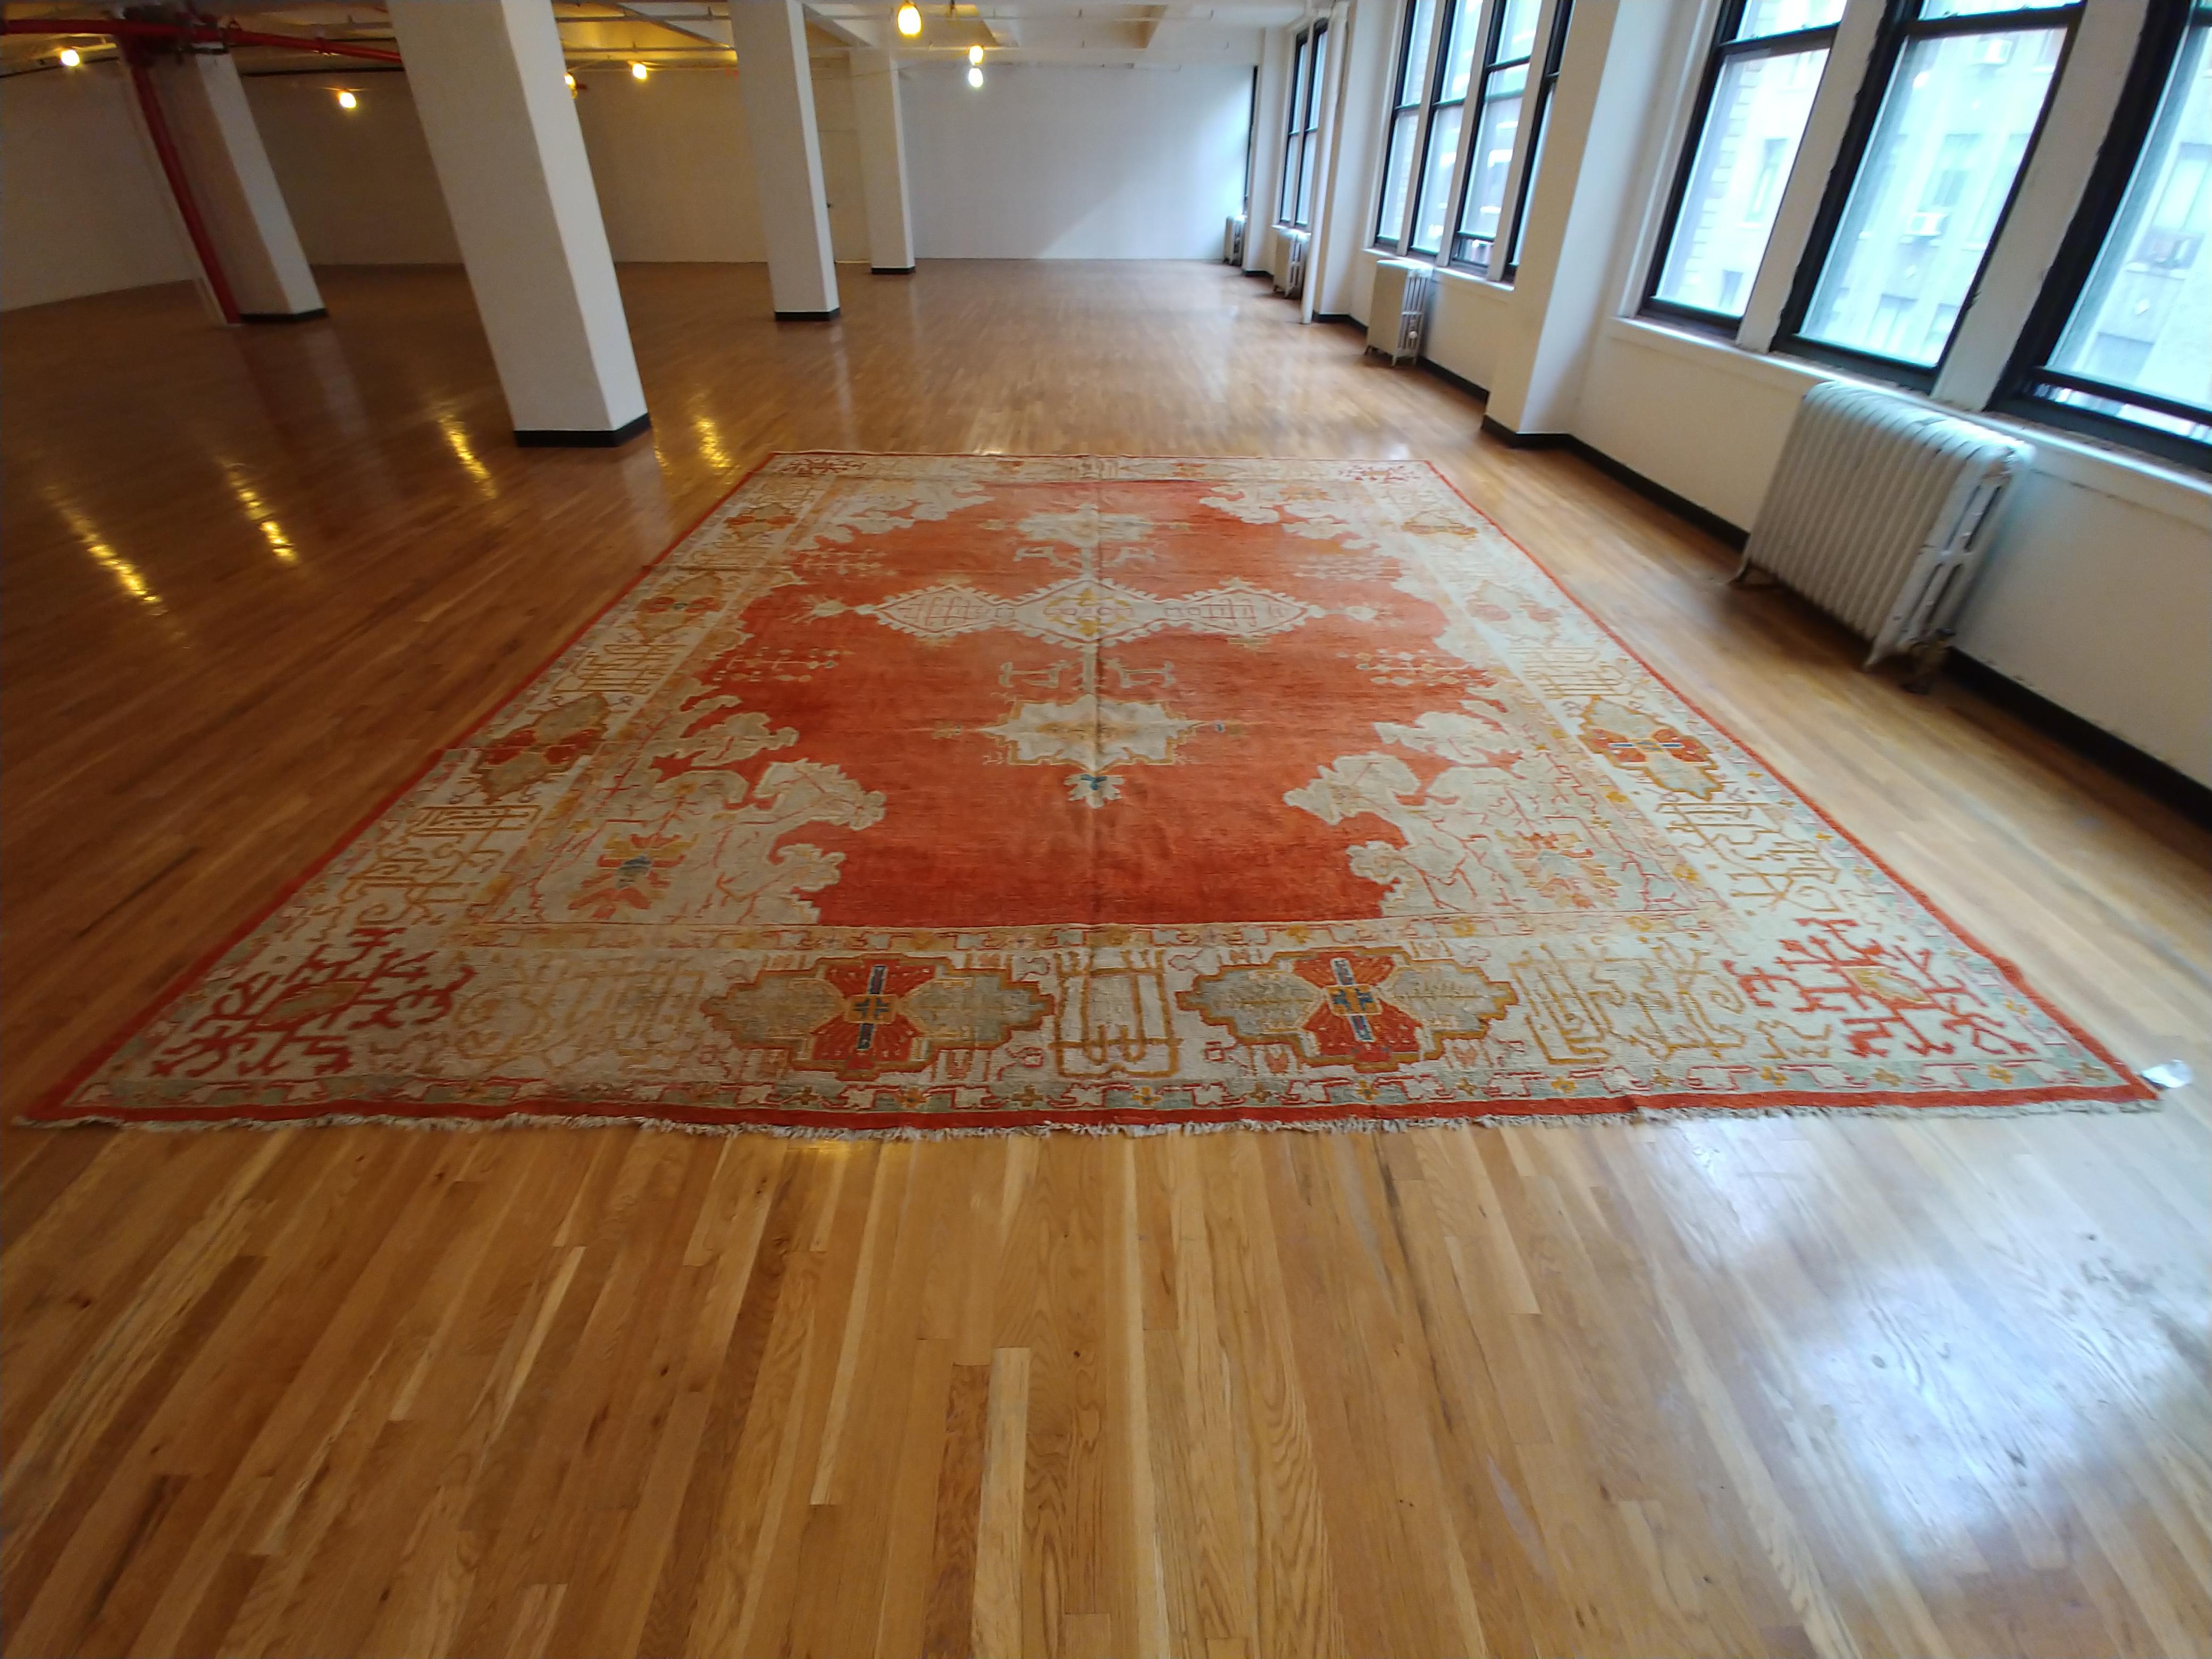 Antique Oushak Carpet, Oriental Rug, Handmade Rug Saffron, Light Blue and Coral For Sale 2